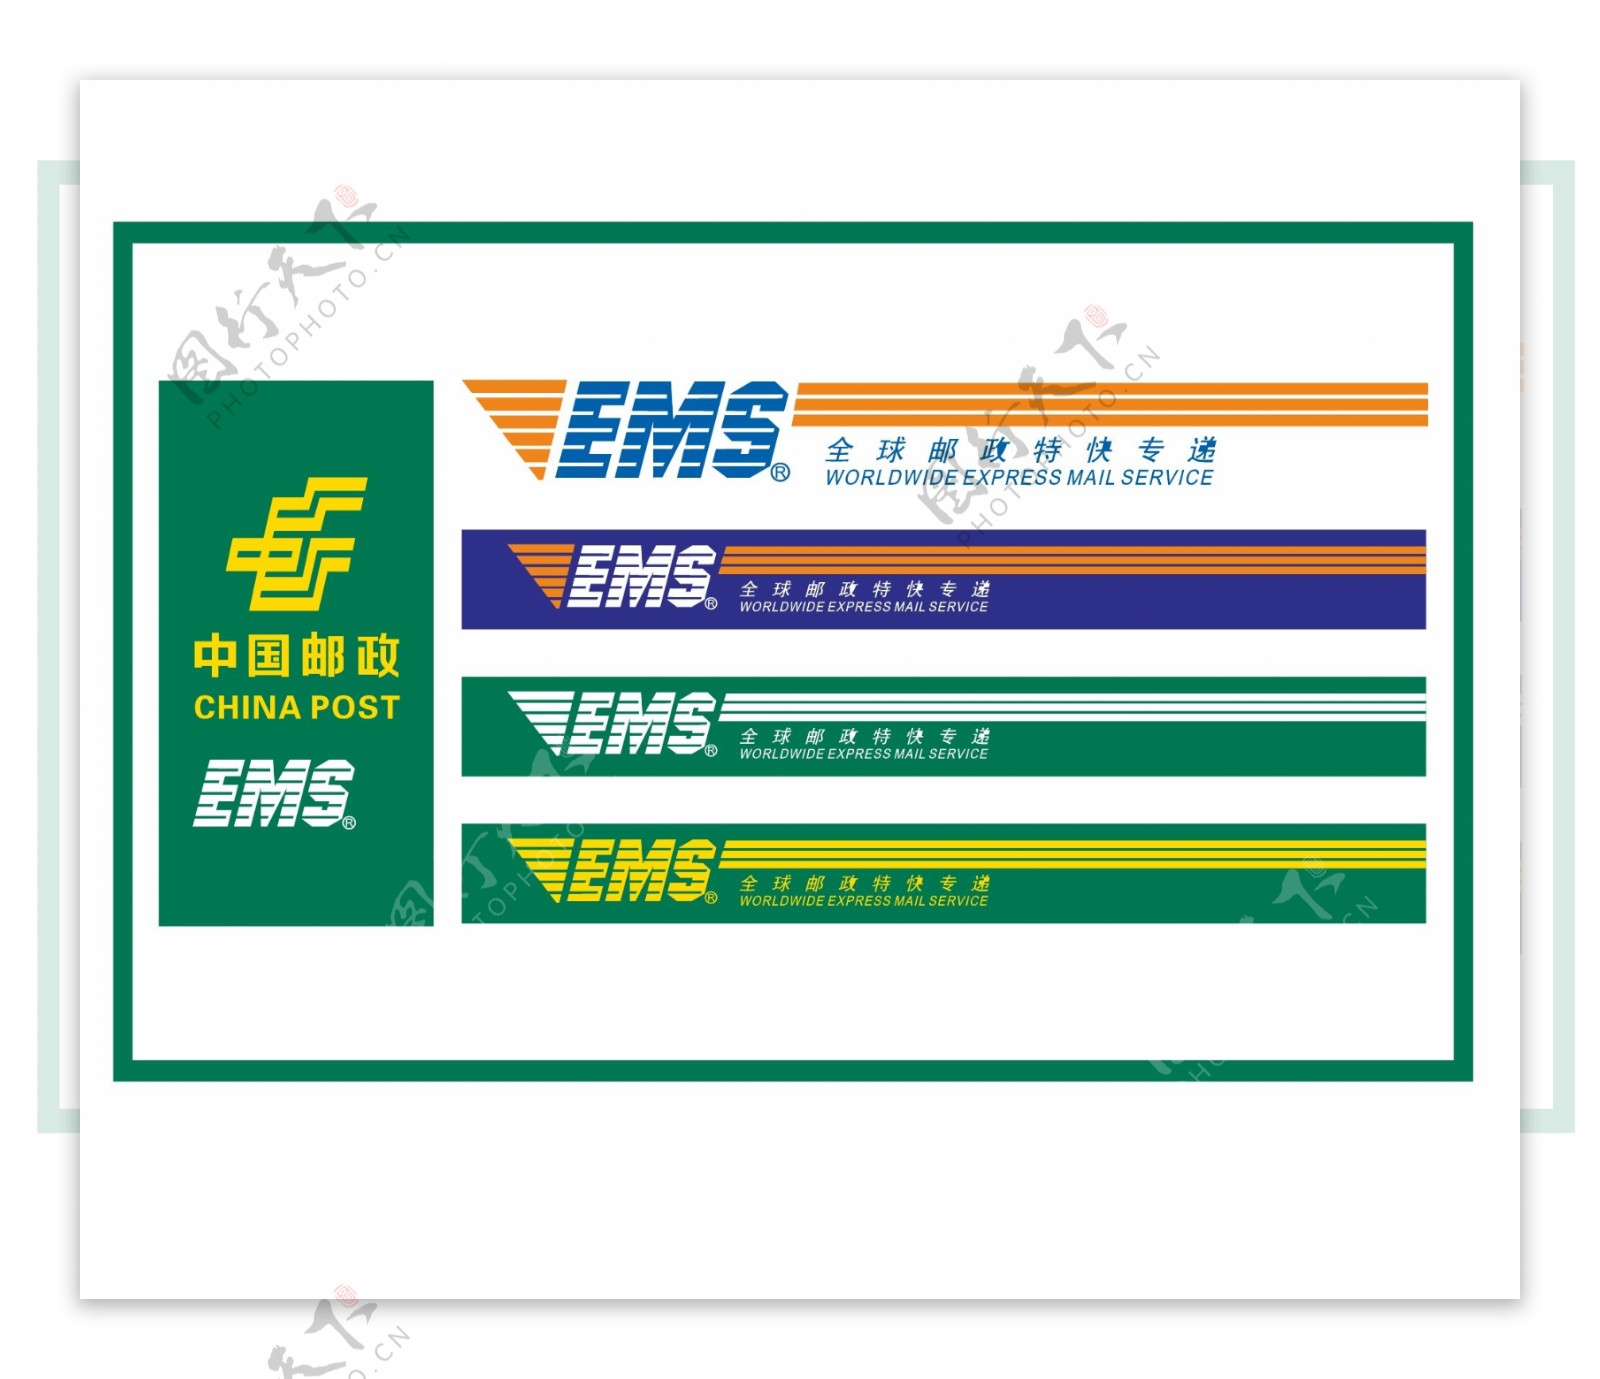 中国邮政logo